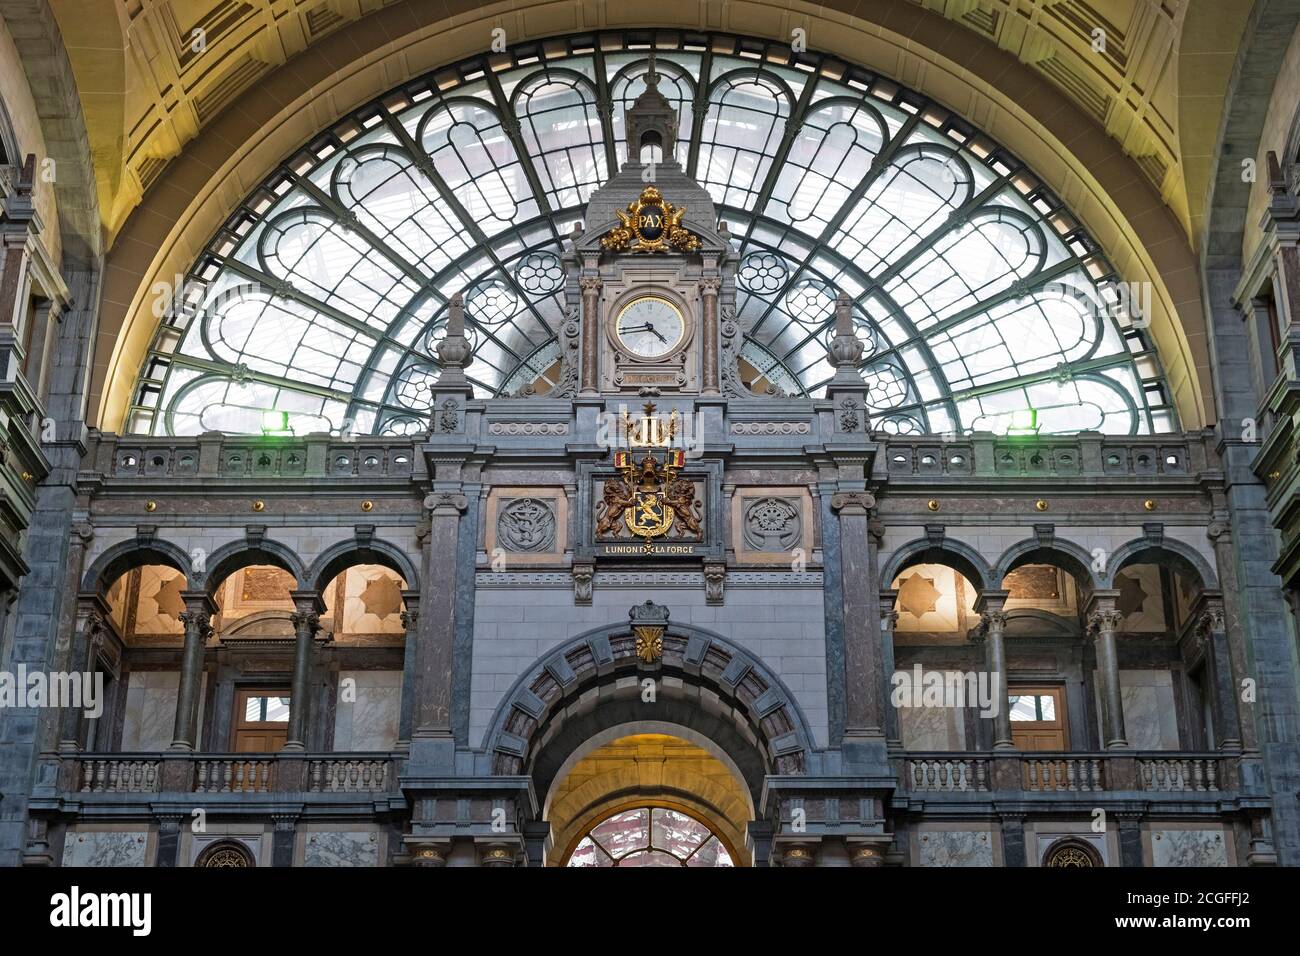 Antwerpen Centraal railway station Antwerp Belgium Stock Photo